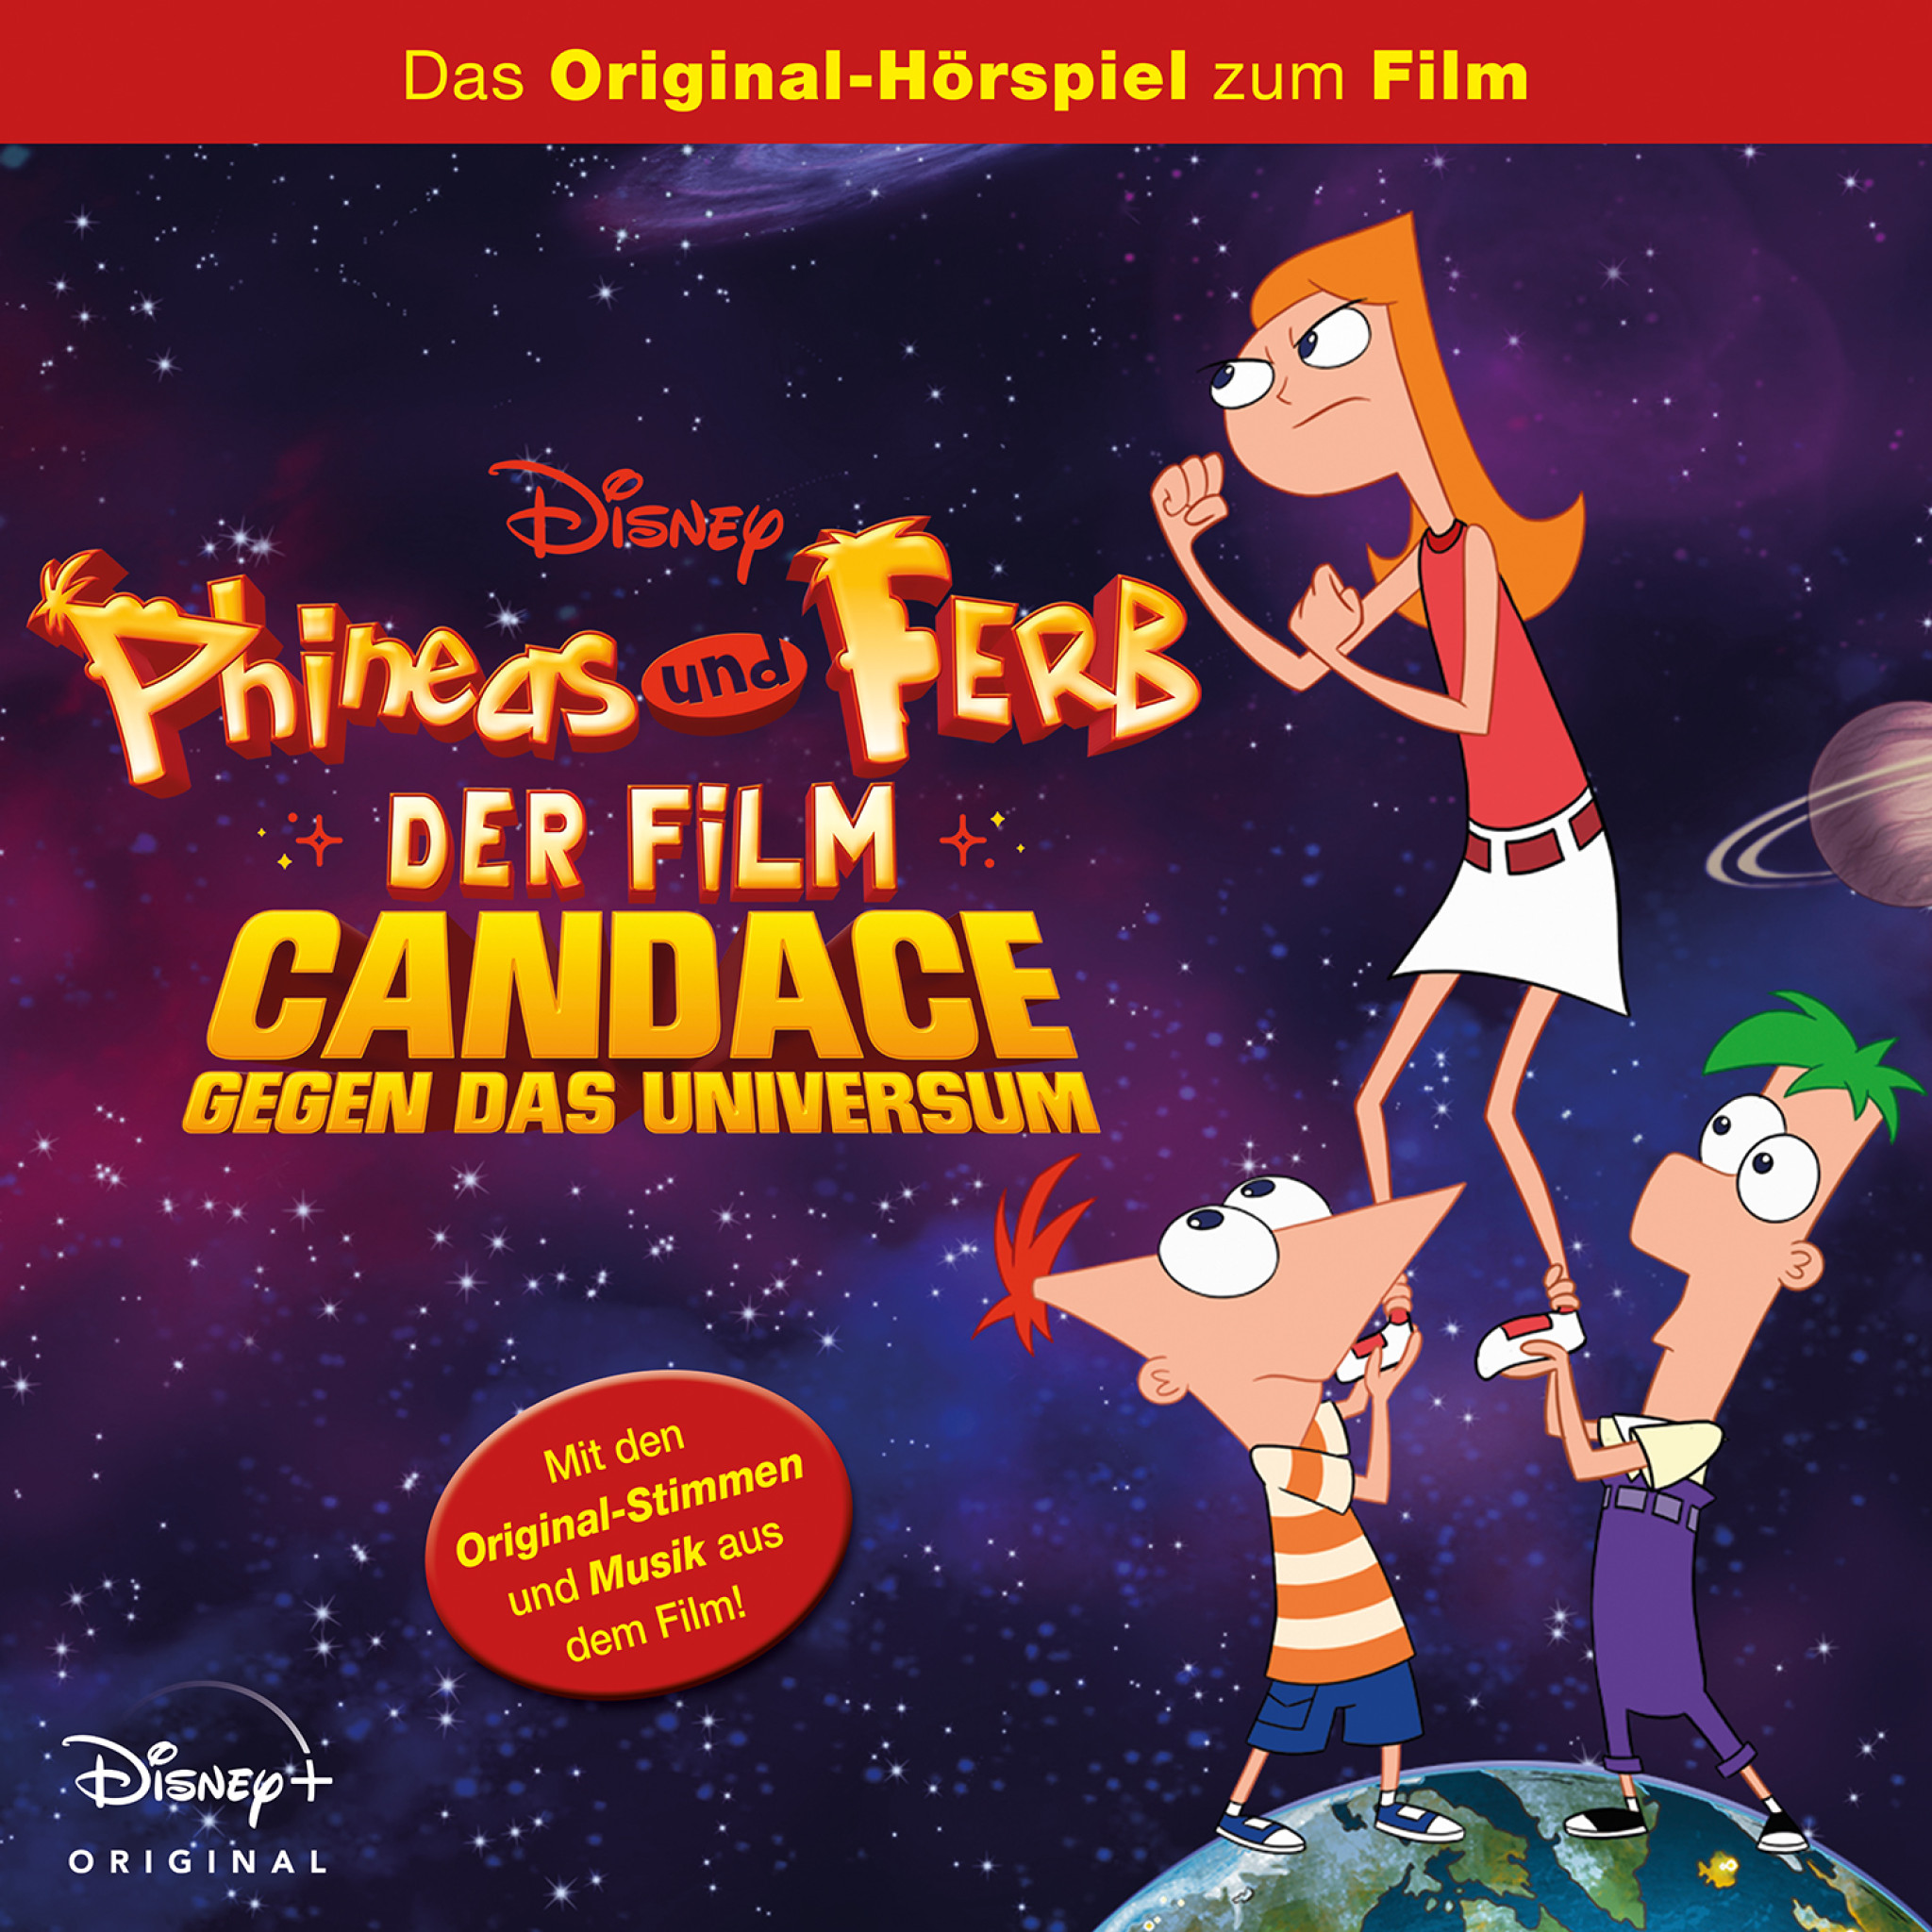 Phineas und Ferb der Film